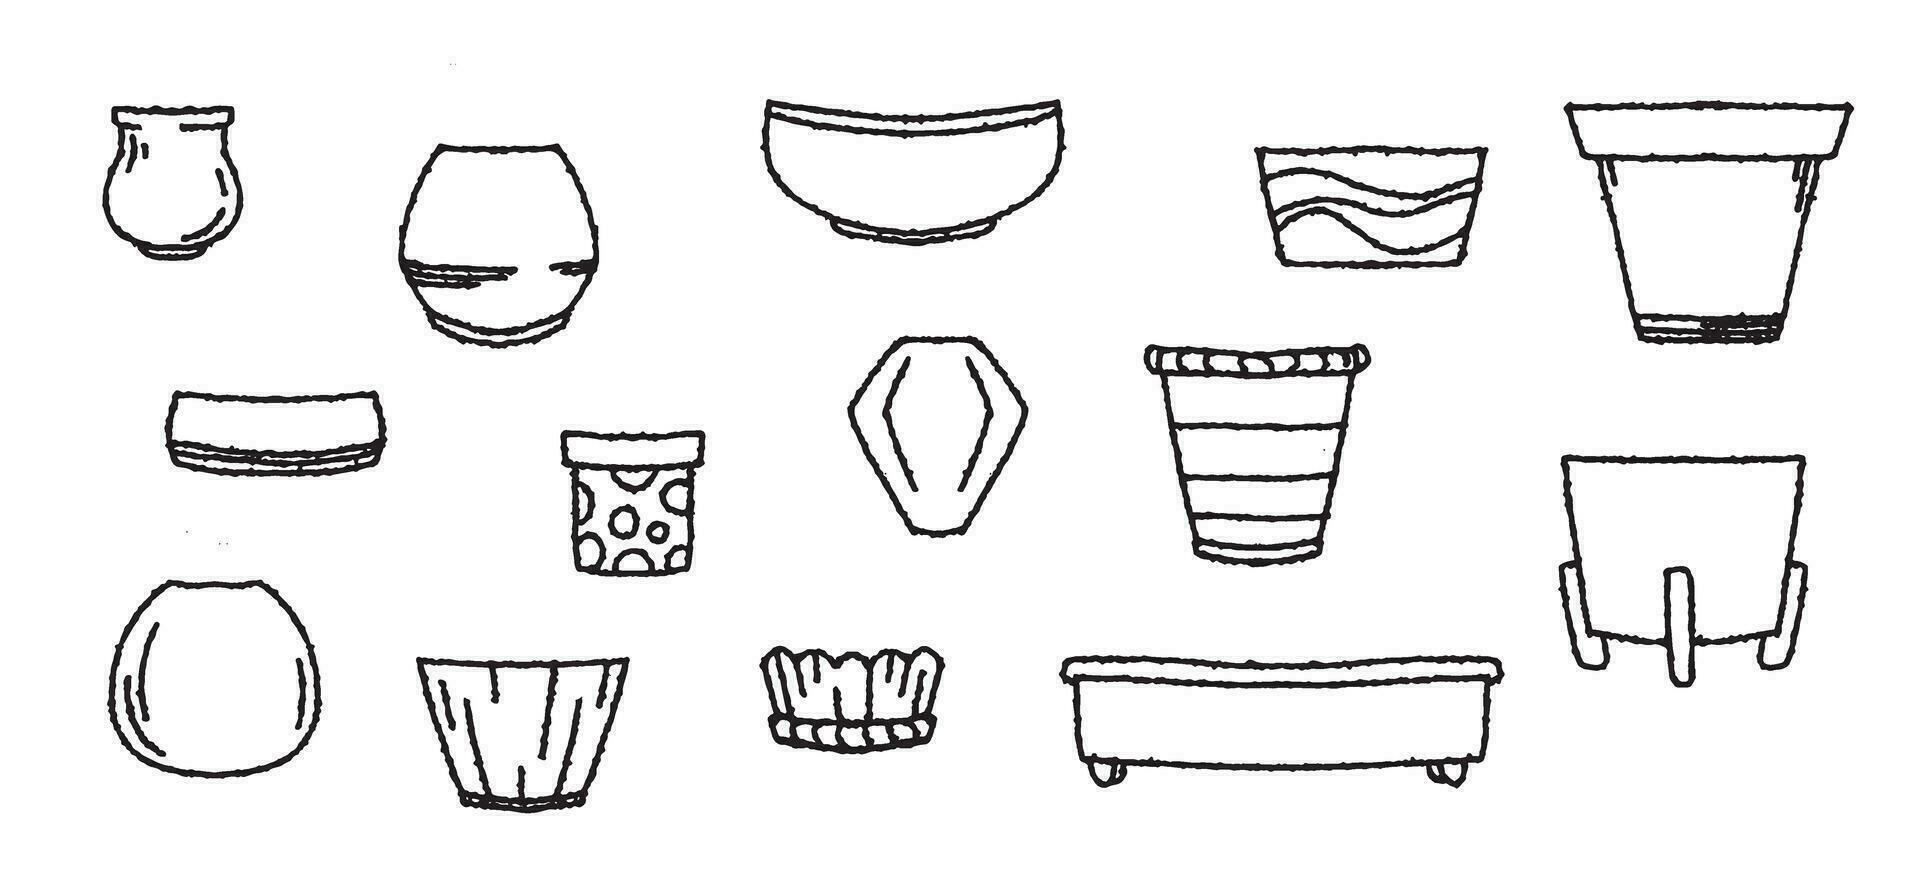 Doodle set of plant pots, sketch vector illustration